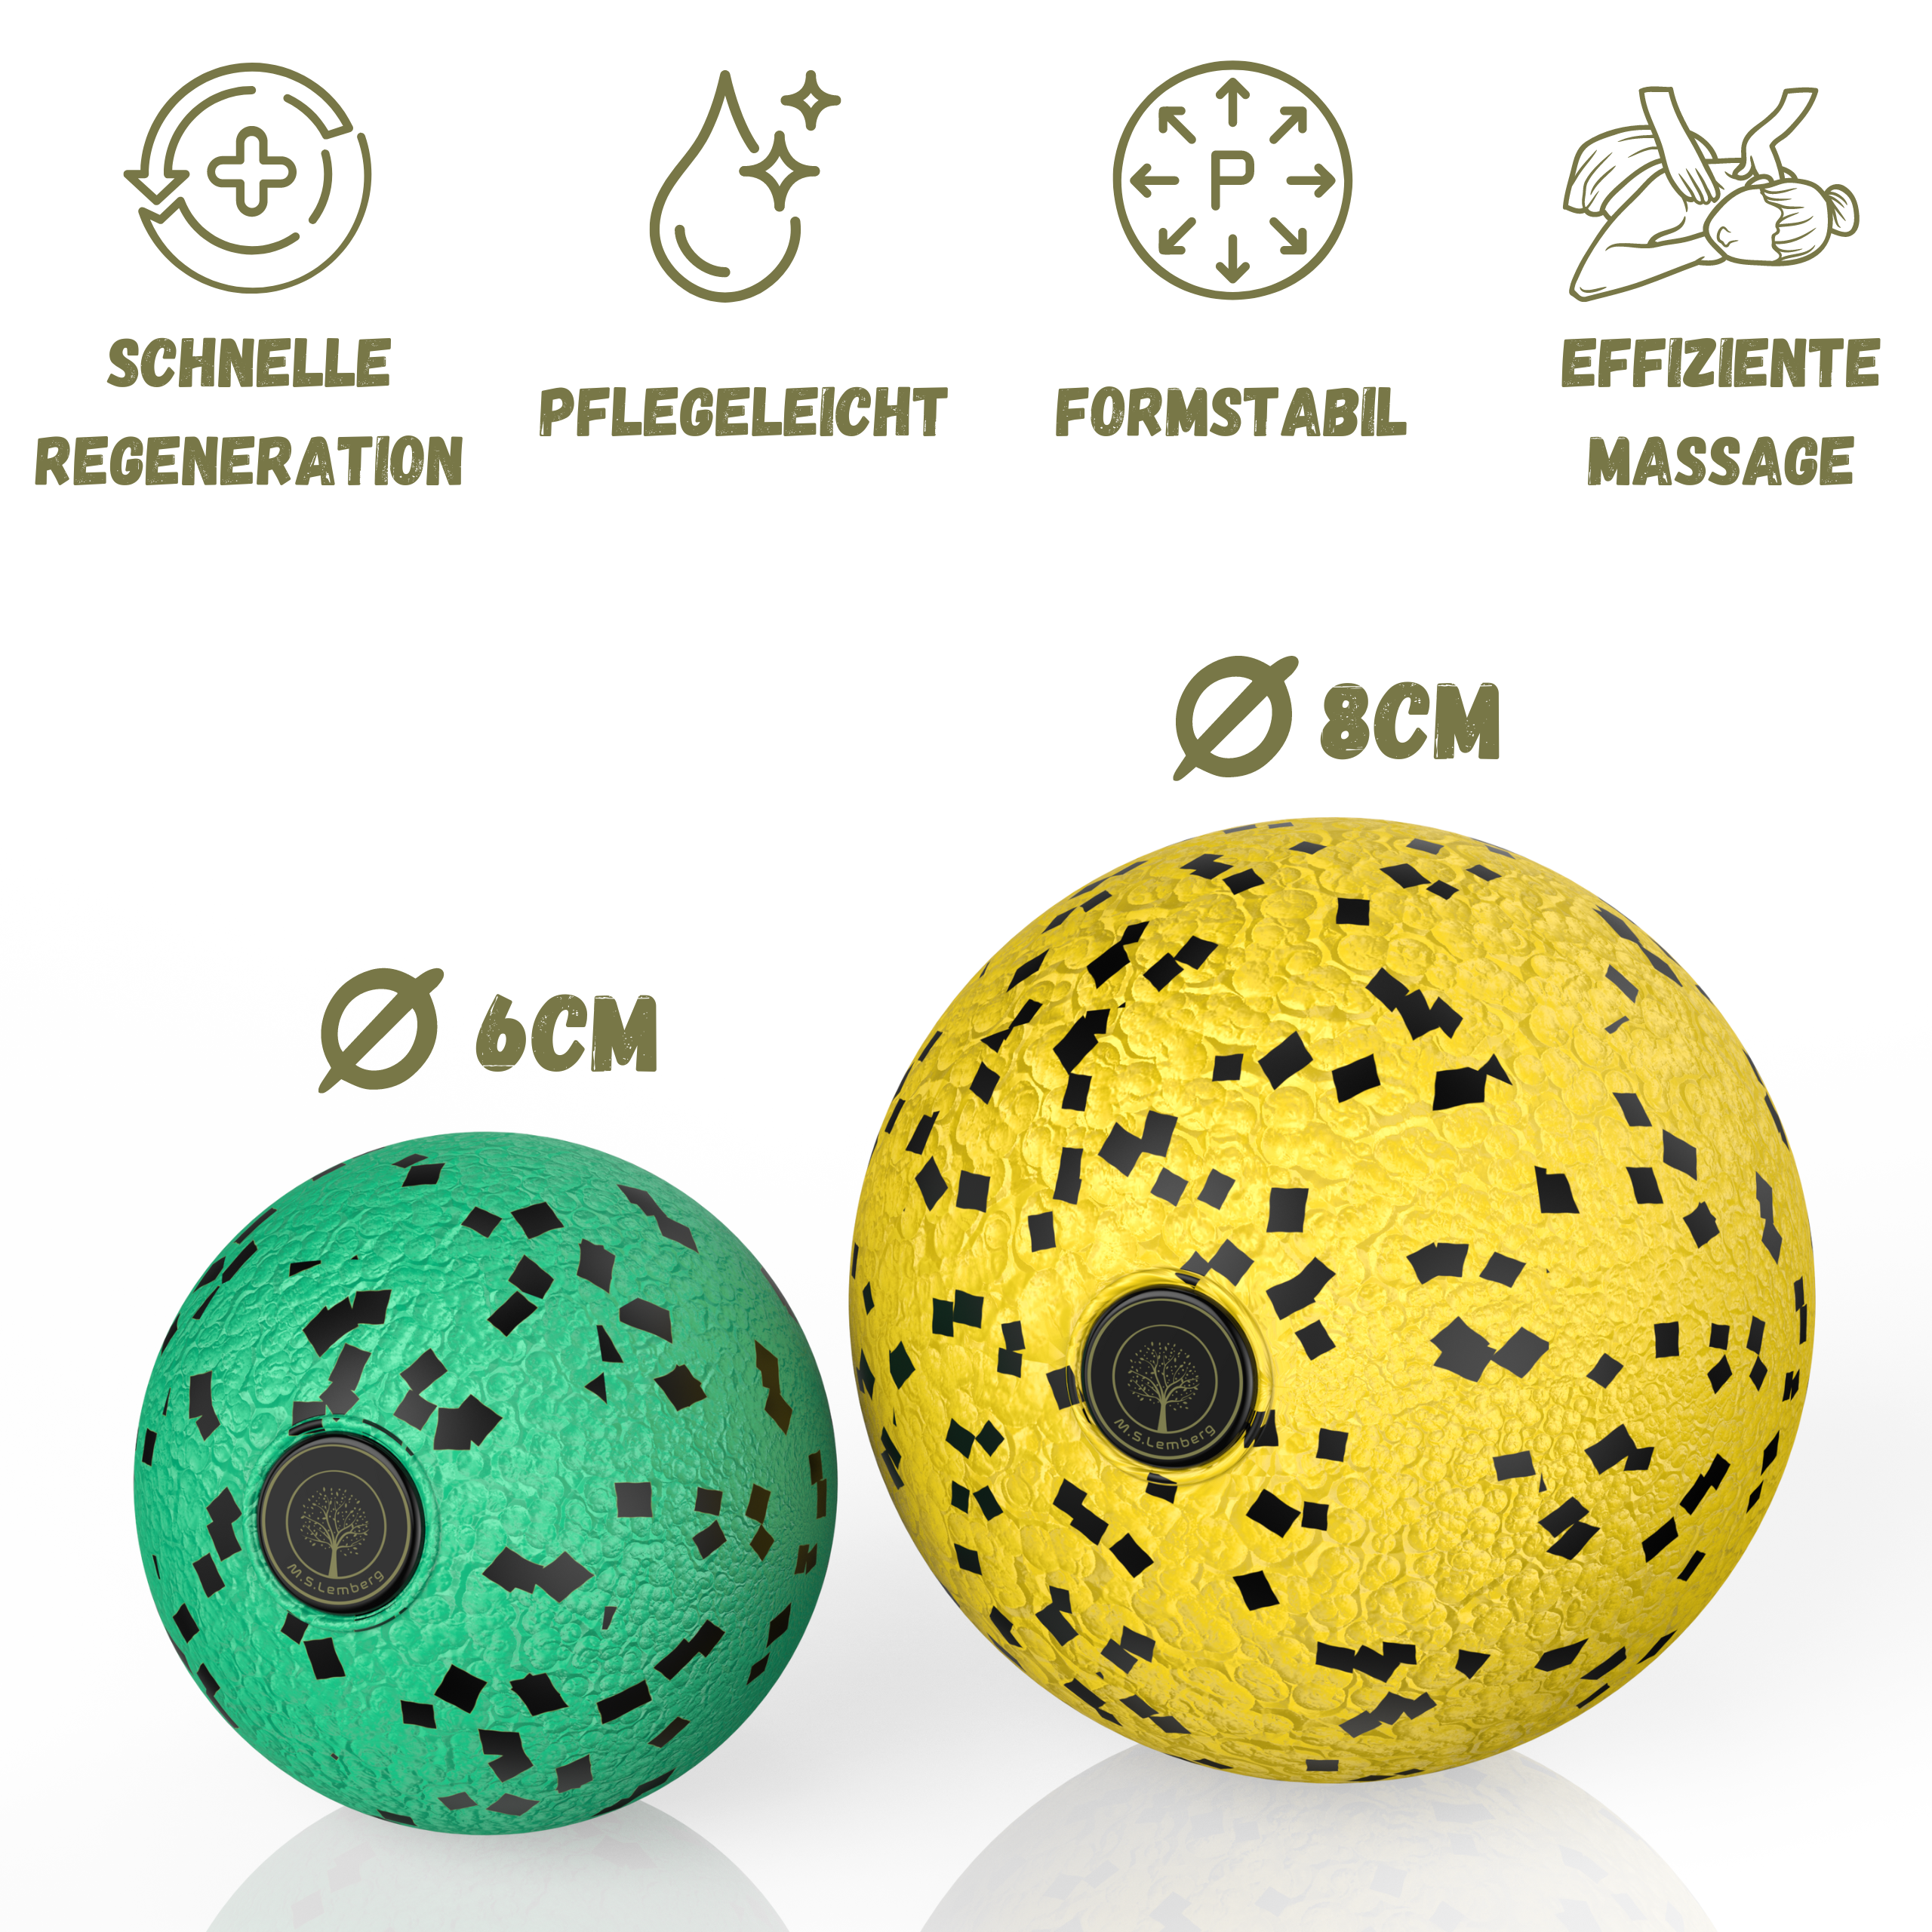 Grüner Faszienball mit einem Durchmesser von 6 cm und gelber Faszienball mit einem Durchmesser von 8 cm, hergestellt aus umweltfreundlichem EPP-Material, formstabil, einfach zu reinigen, fördert schnelle Regeneration, tiefenwirksame Massage.